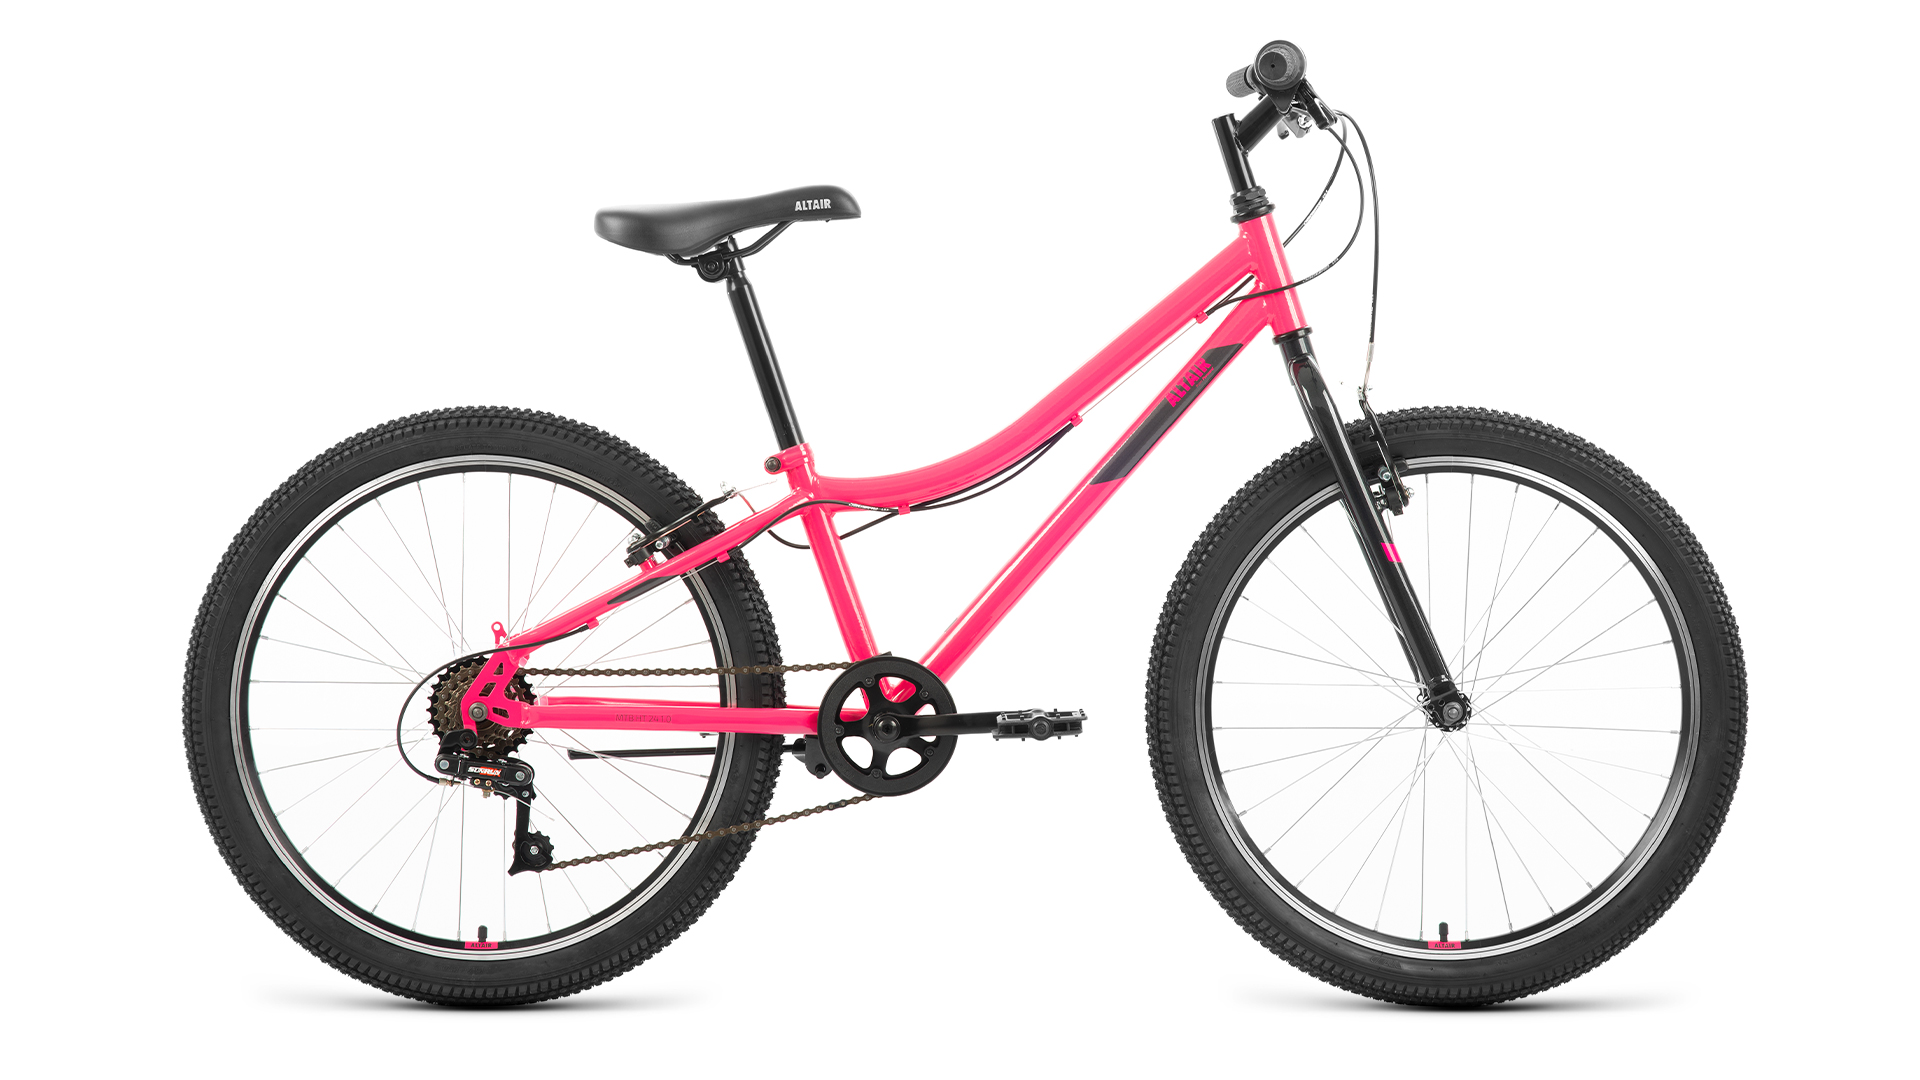 Подростковый велосипед Altair MTB HT 24 1.0, год 2022, цвет Розовый-Серебристый